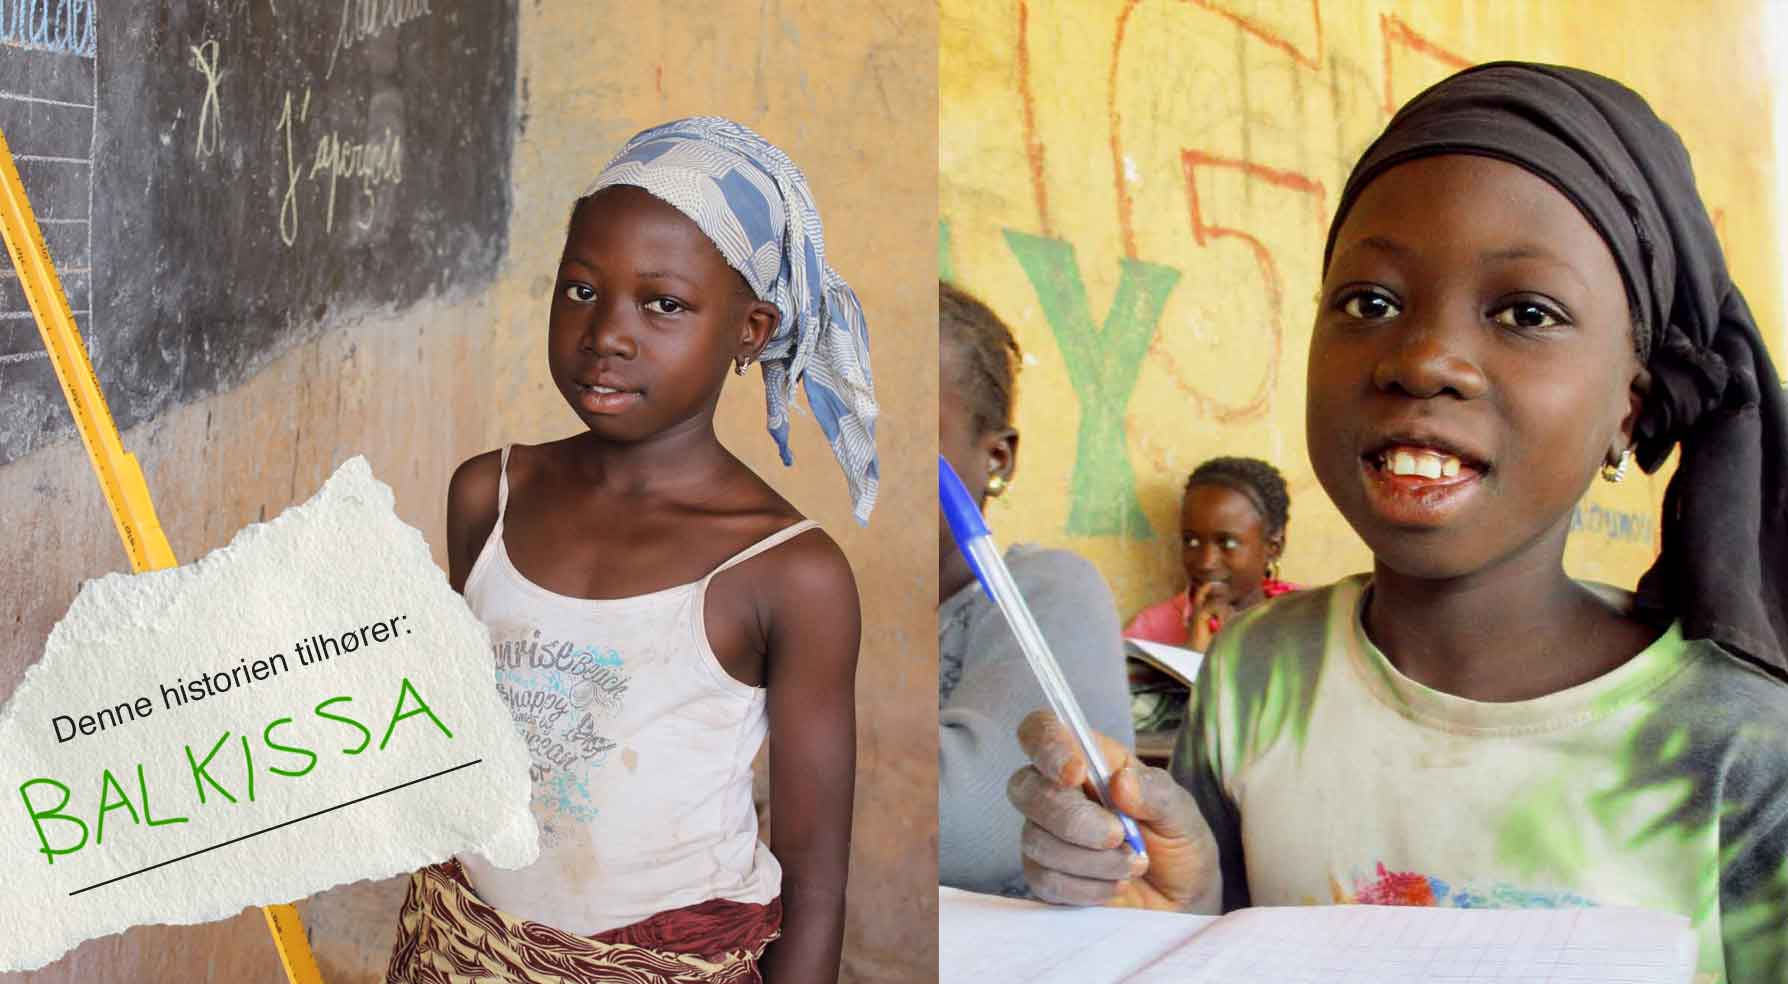 Balkissa fra Mali elsker skolen